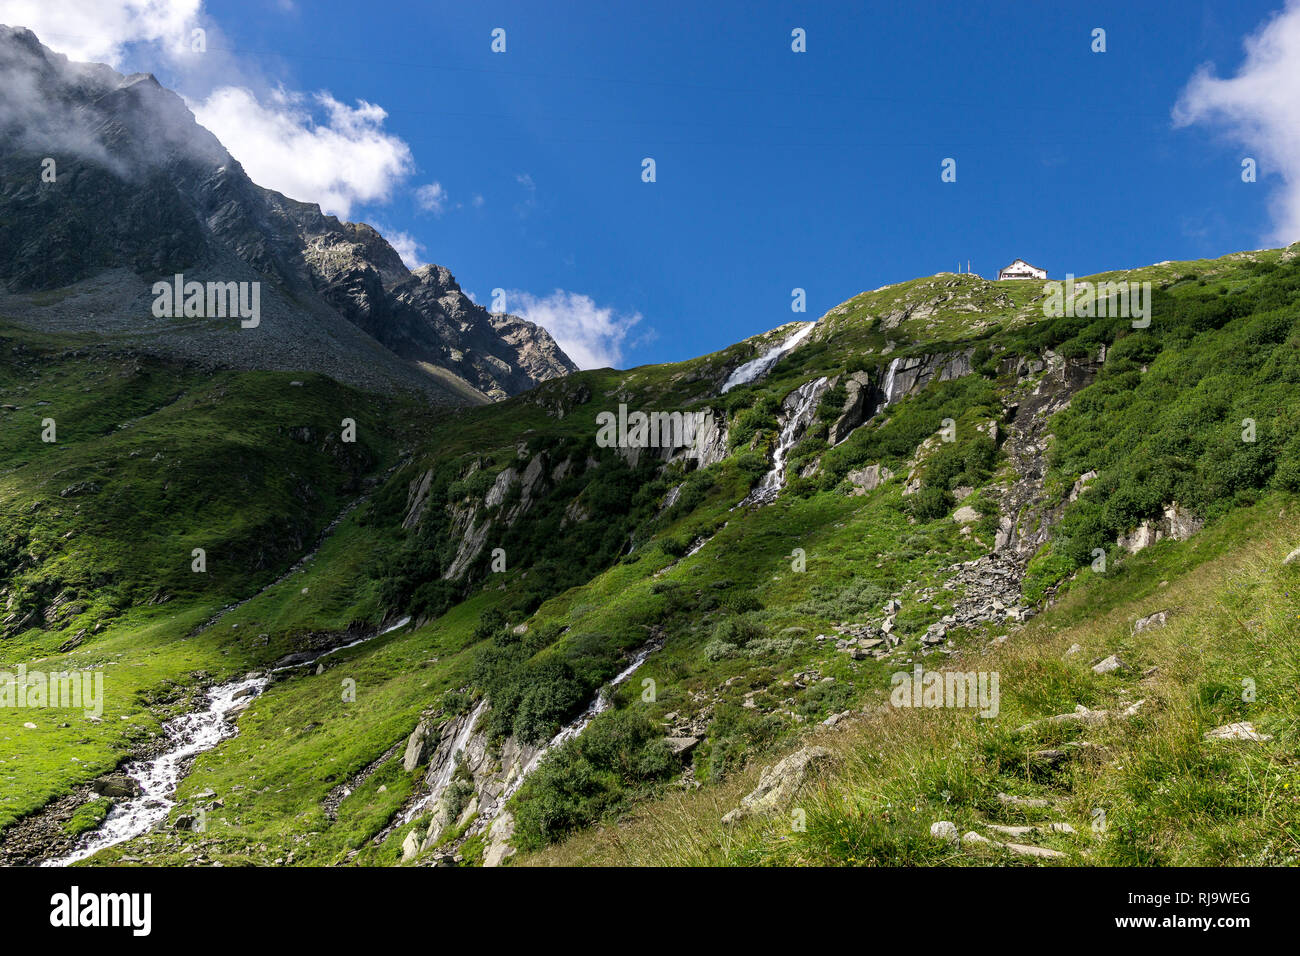 Österreich, Tirol, Stubaier Alpen, Neustift, Blick auf den Falbesoner Wasserfall und die Neue Regensburger Hütte auf der Geländekante Stock Photo